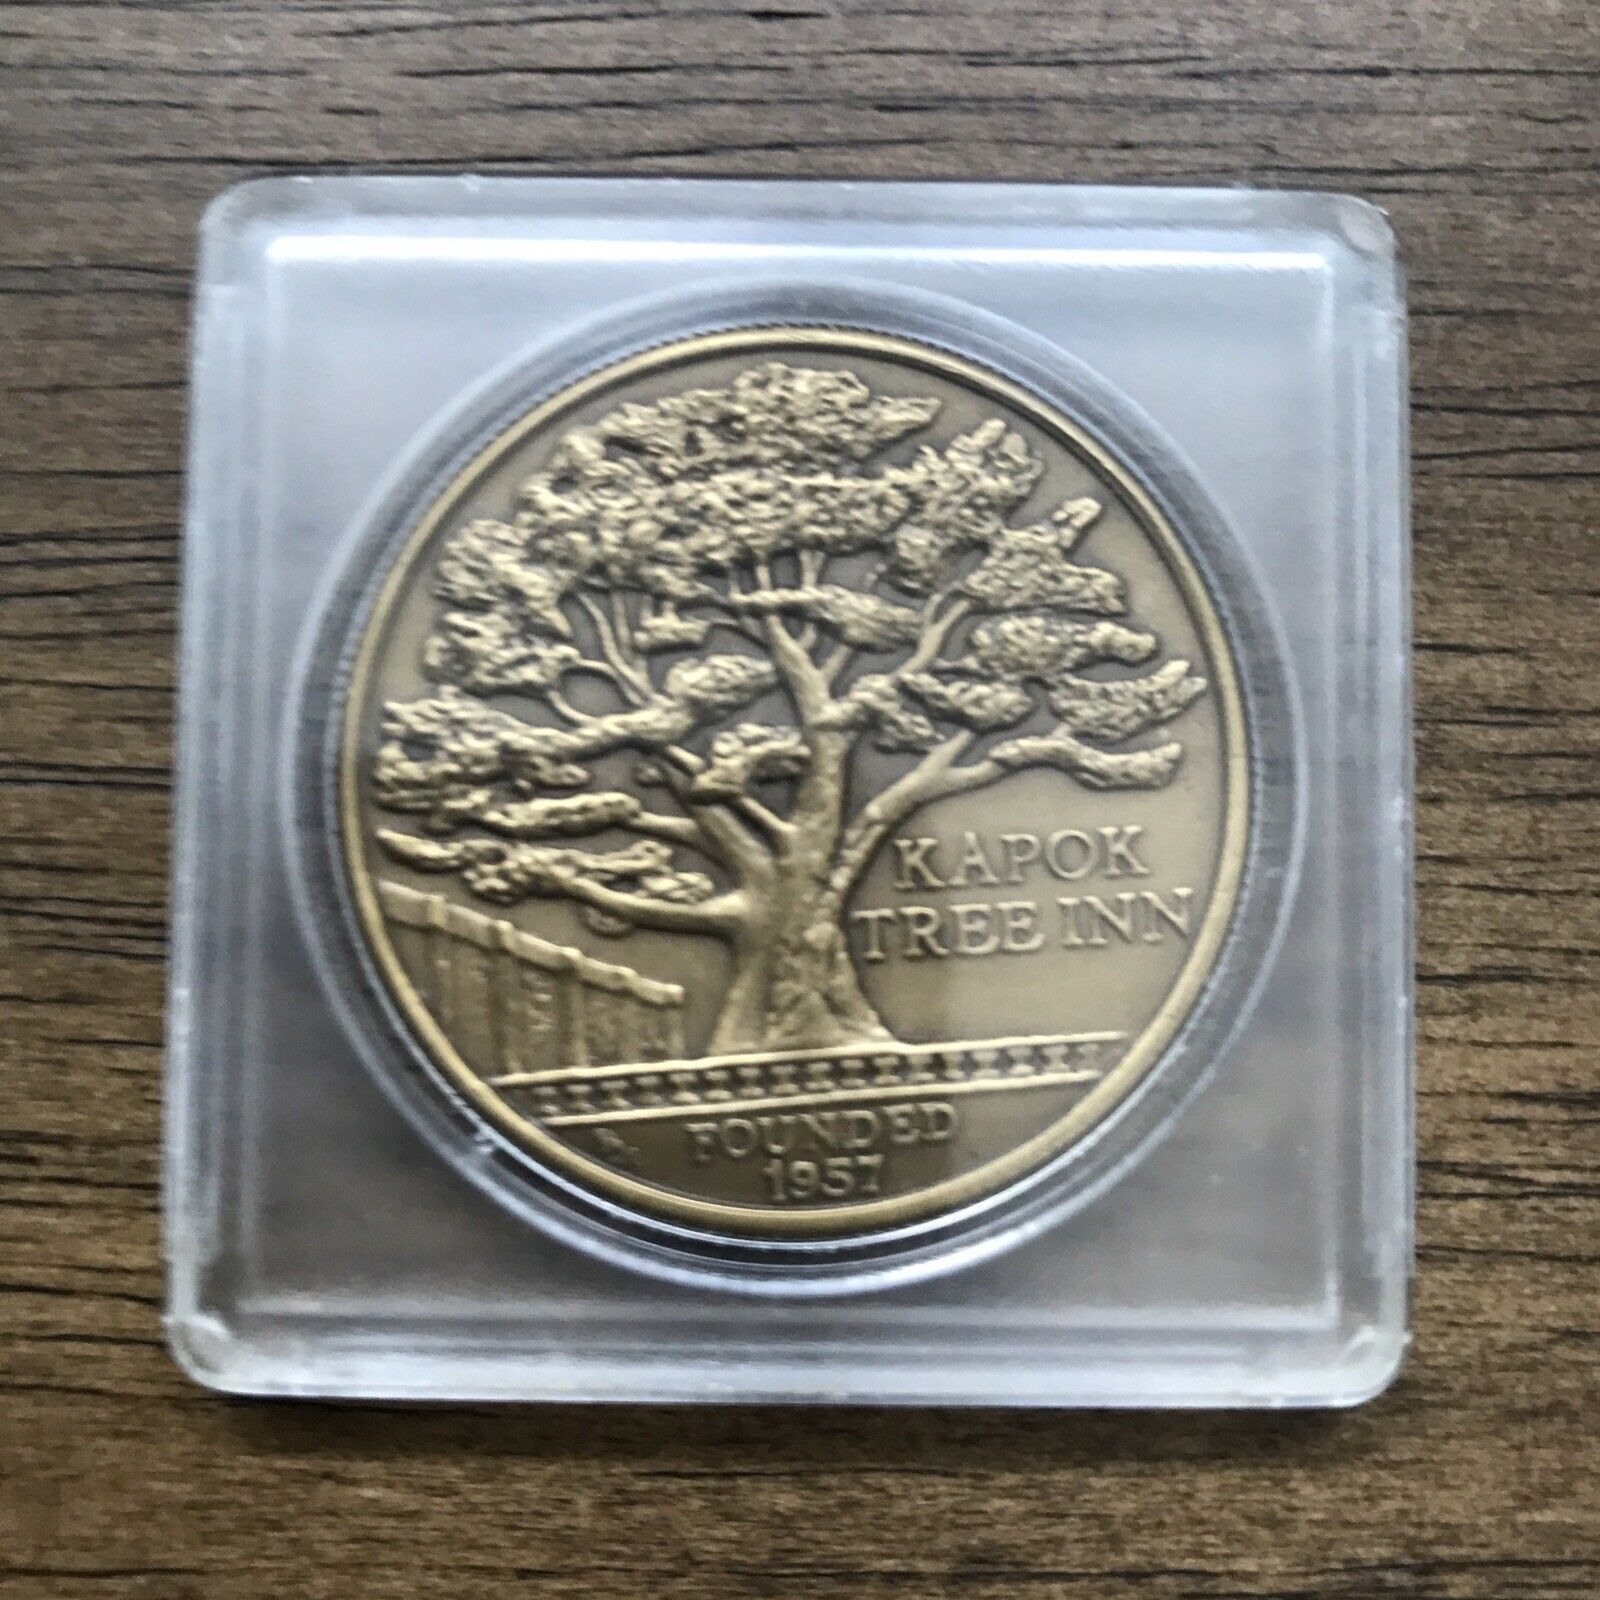 Vintage 1973 Kapok Tree Inn Beautiful Encased Coin Medallion 